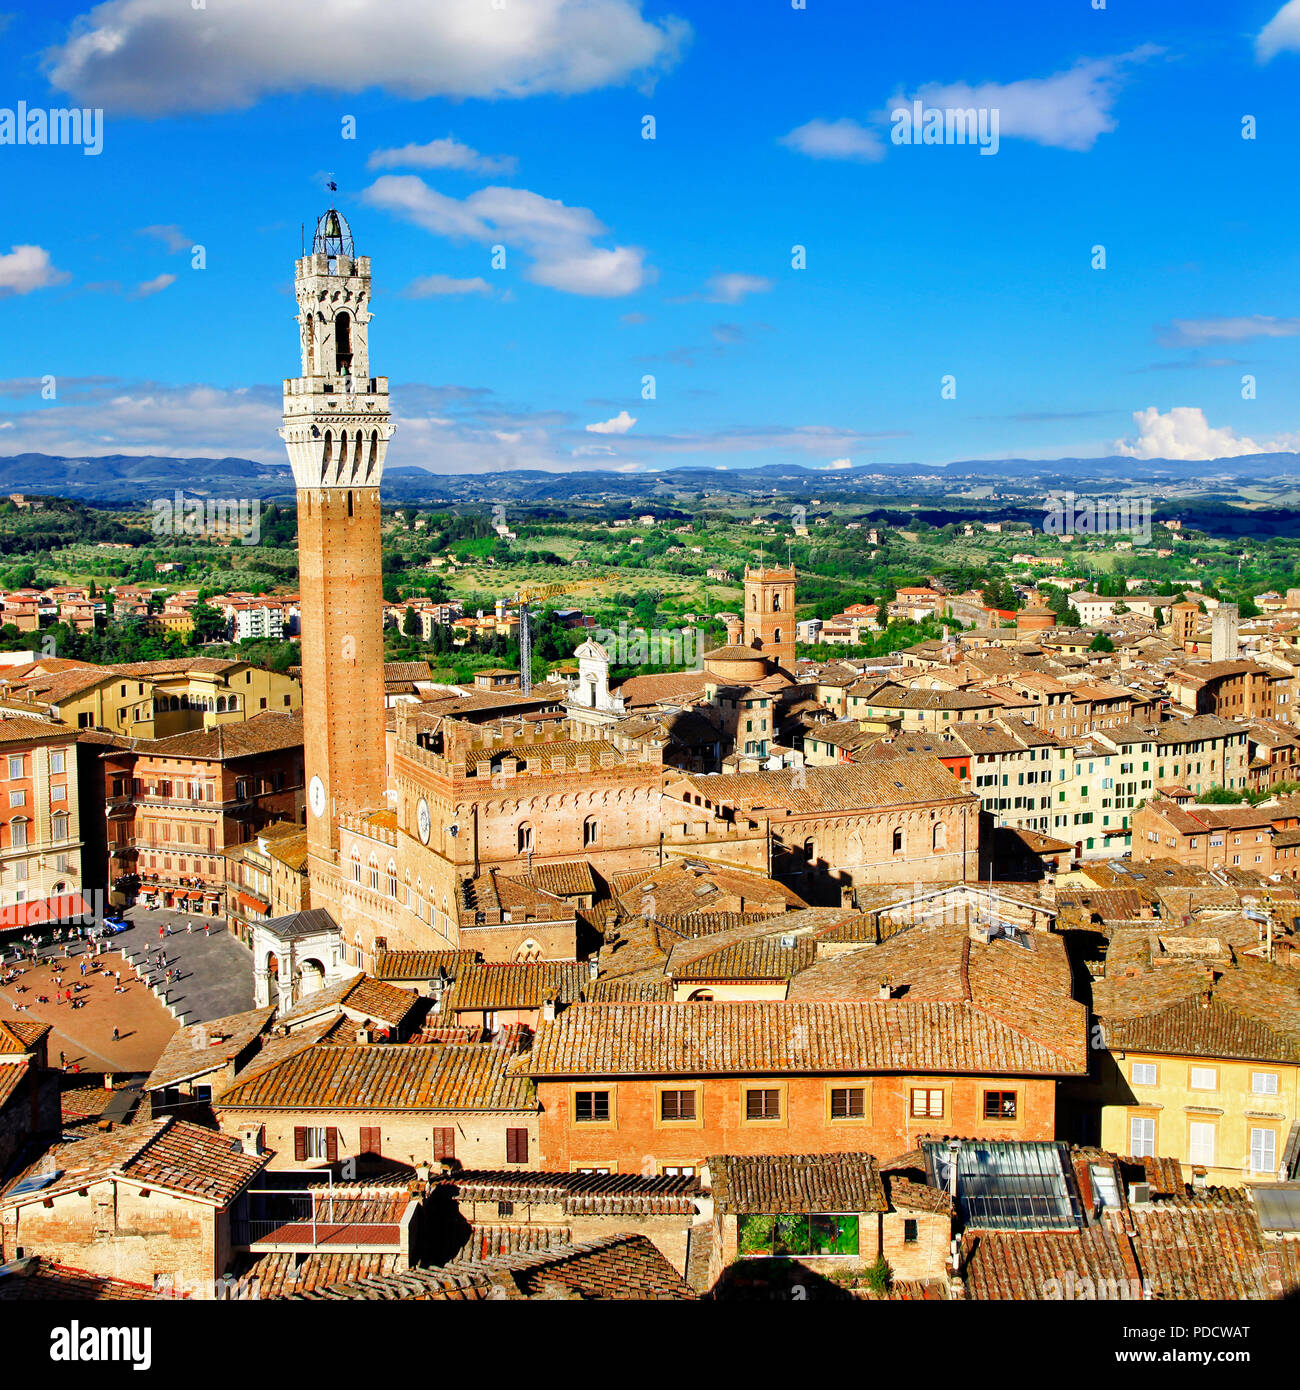 Belle ville de Sienne,vue panoramique,Toscane,Italie Banque D'Images